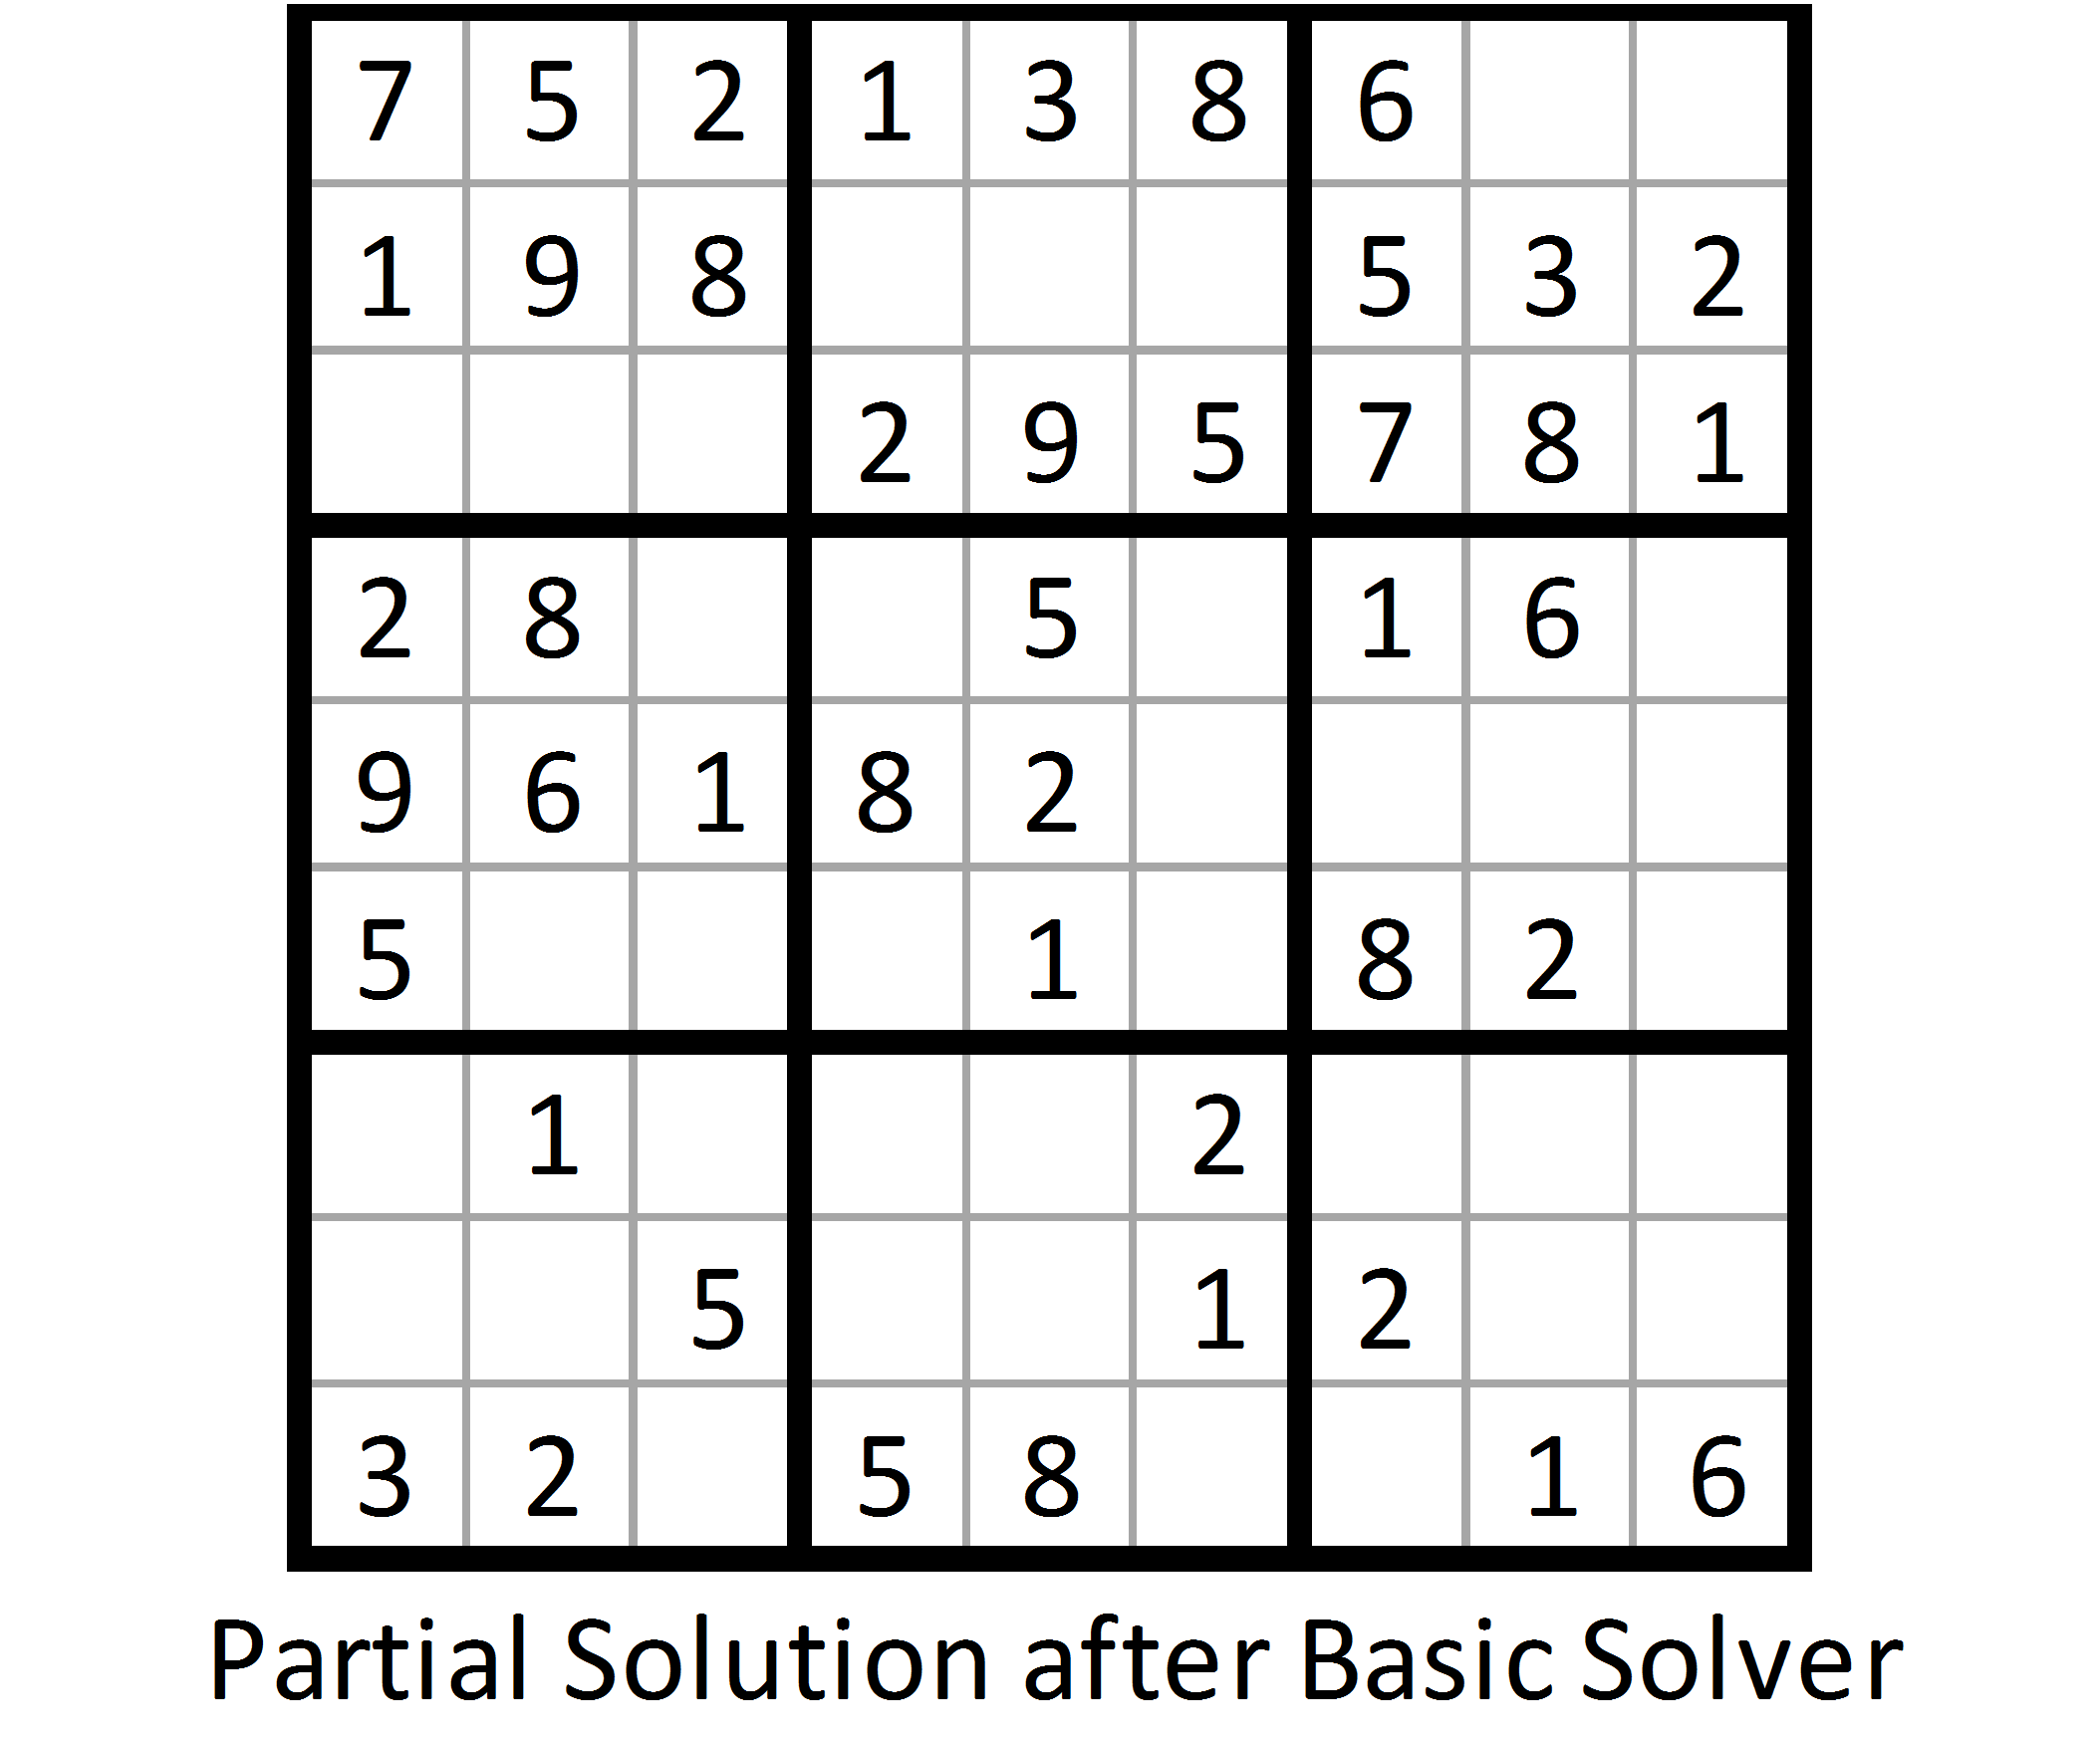 sudoku generator algorithm